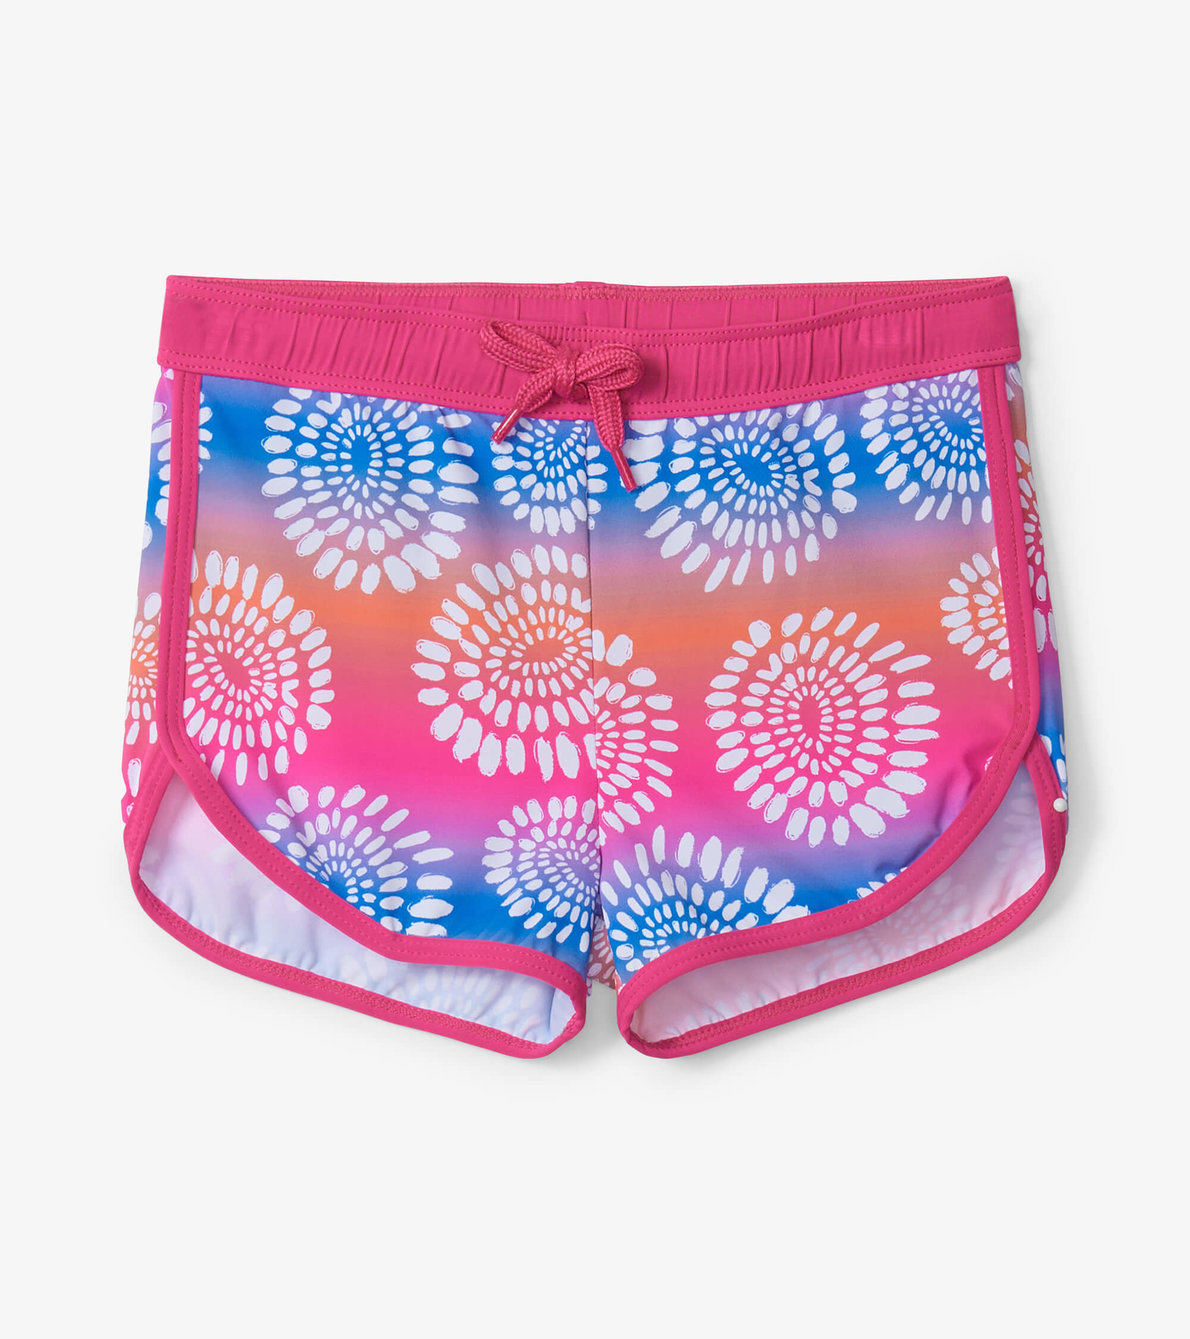 View larger image of Eyelash Mandala Swim Shorts